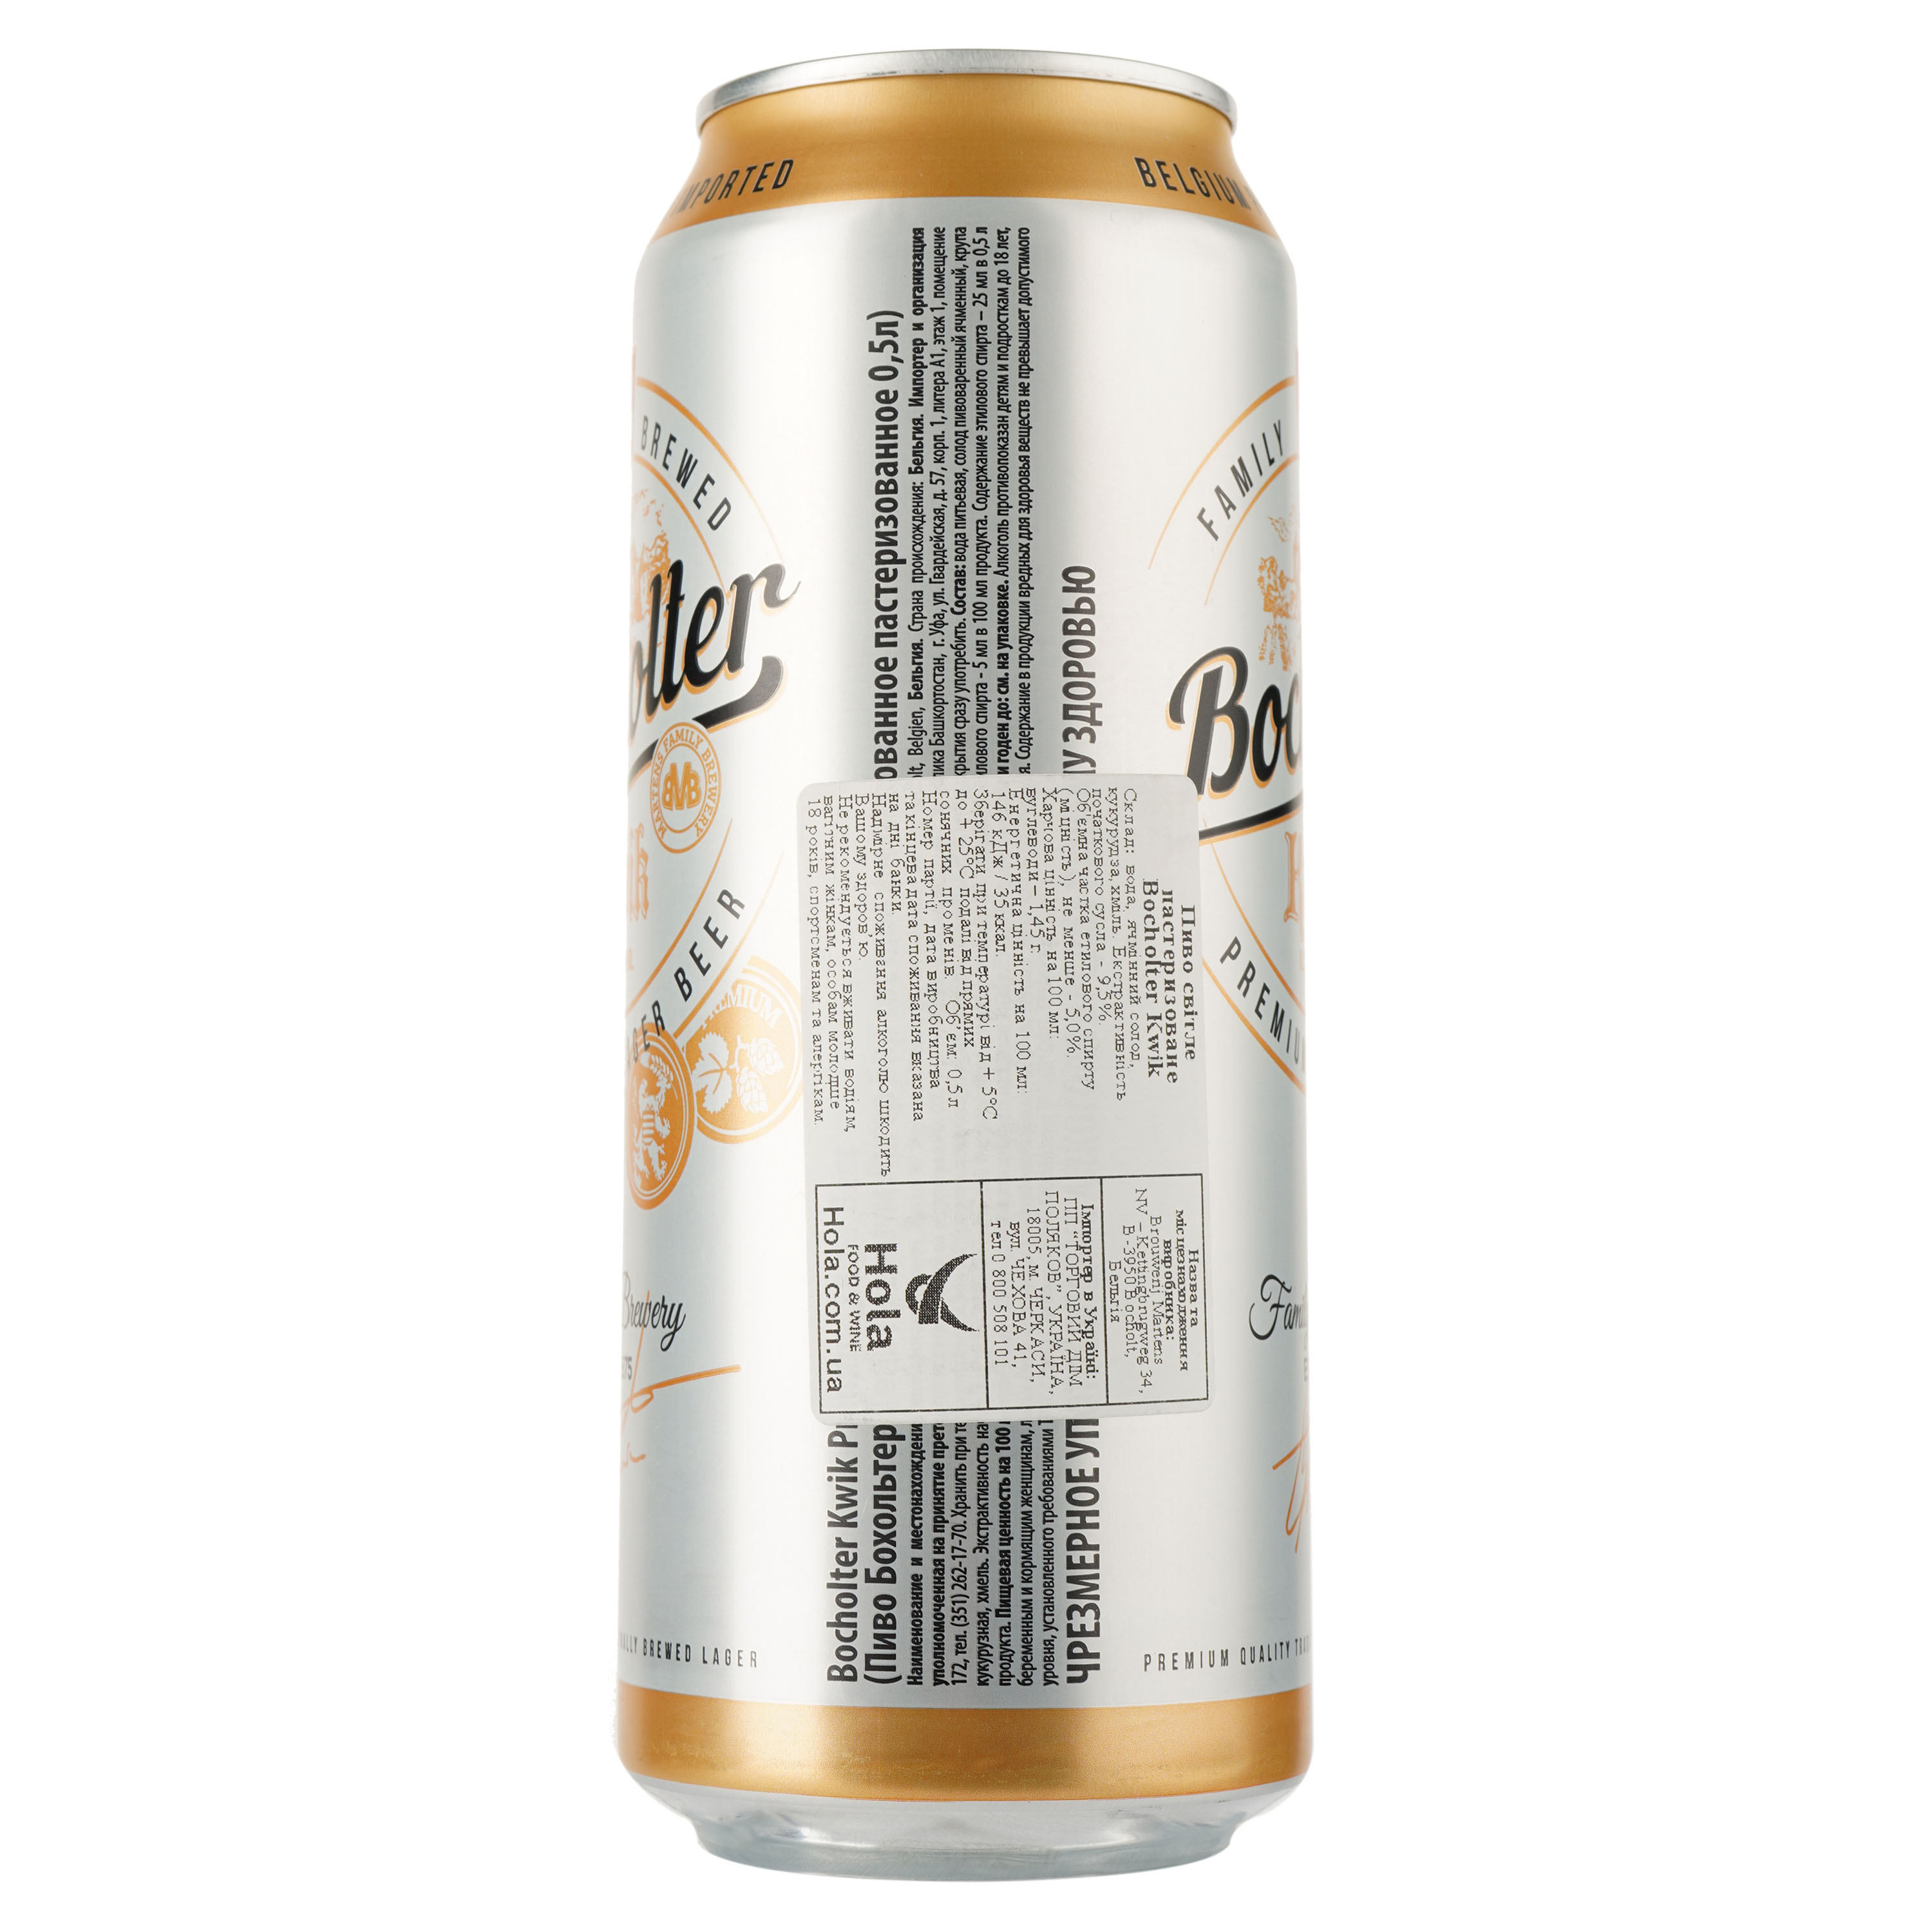 Пиво Bocholter Kwik, світле, фільтроване, 5%, з/б, 0,5 л - фото 2